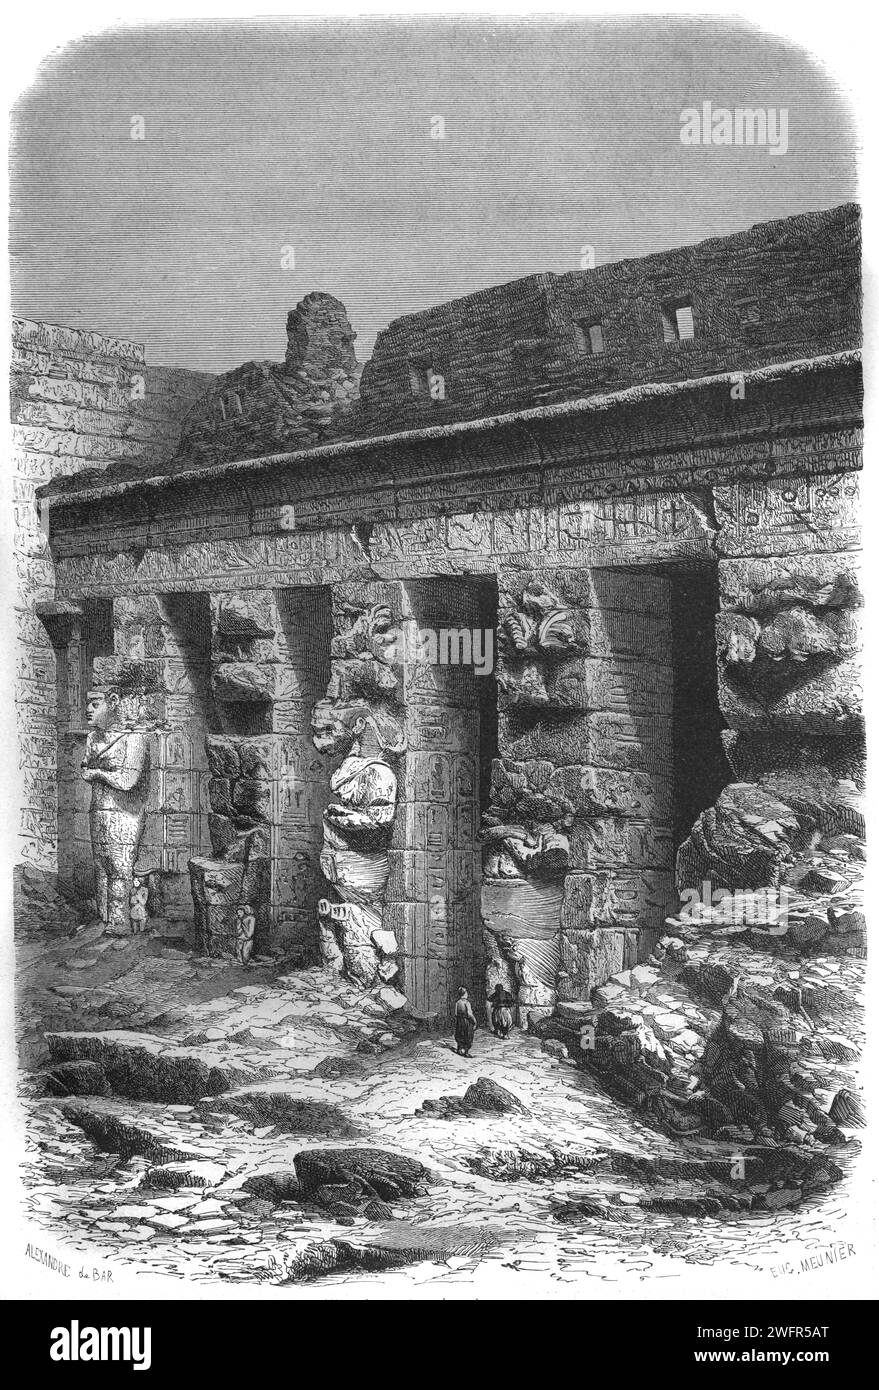 Cour intérieure avec colonnes massives de pierre de Medinet Habu, Temple mortuaire de Ramsès II (c9ème av. J.-C.) Egypte. Gravure vintage ou historique ou Illustration 1863 Banque D'Images